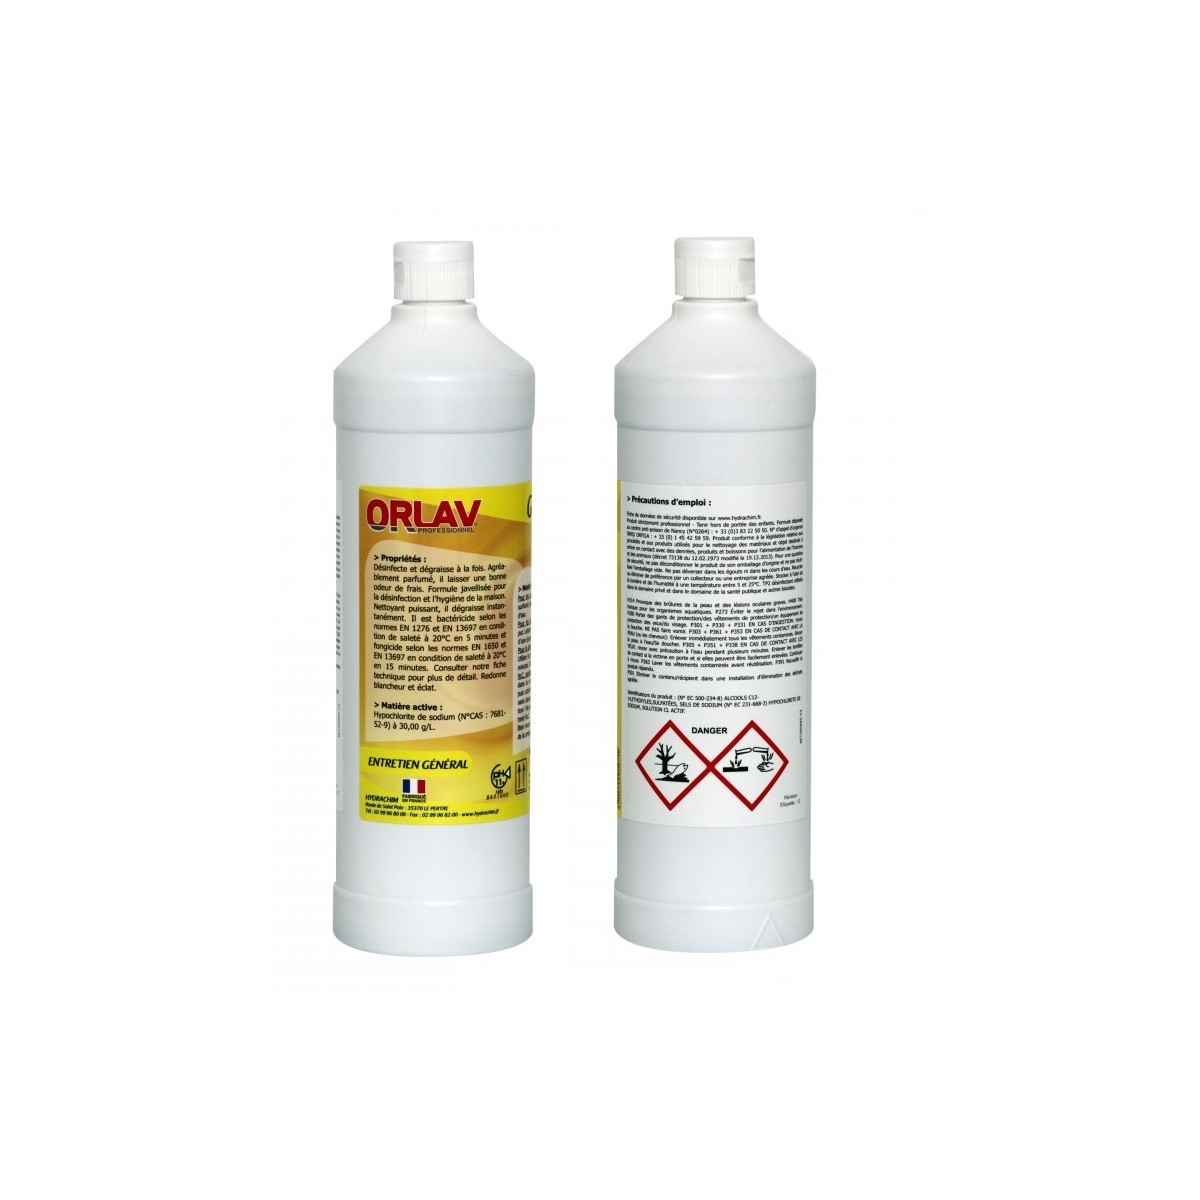 MATEX PRO VITRE produit lavage vitre flacon de 1 litre - Hypronet